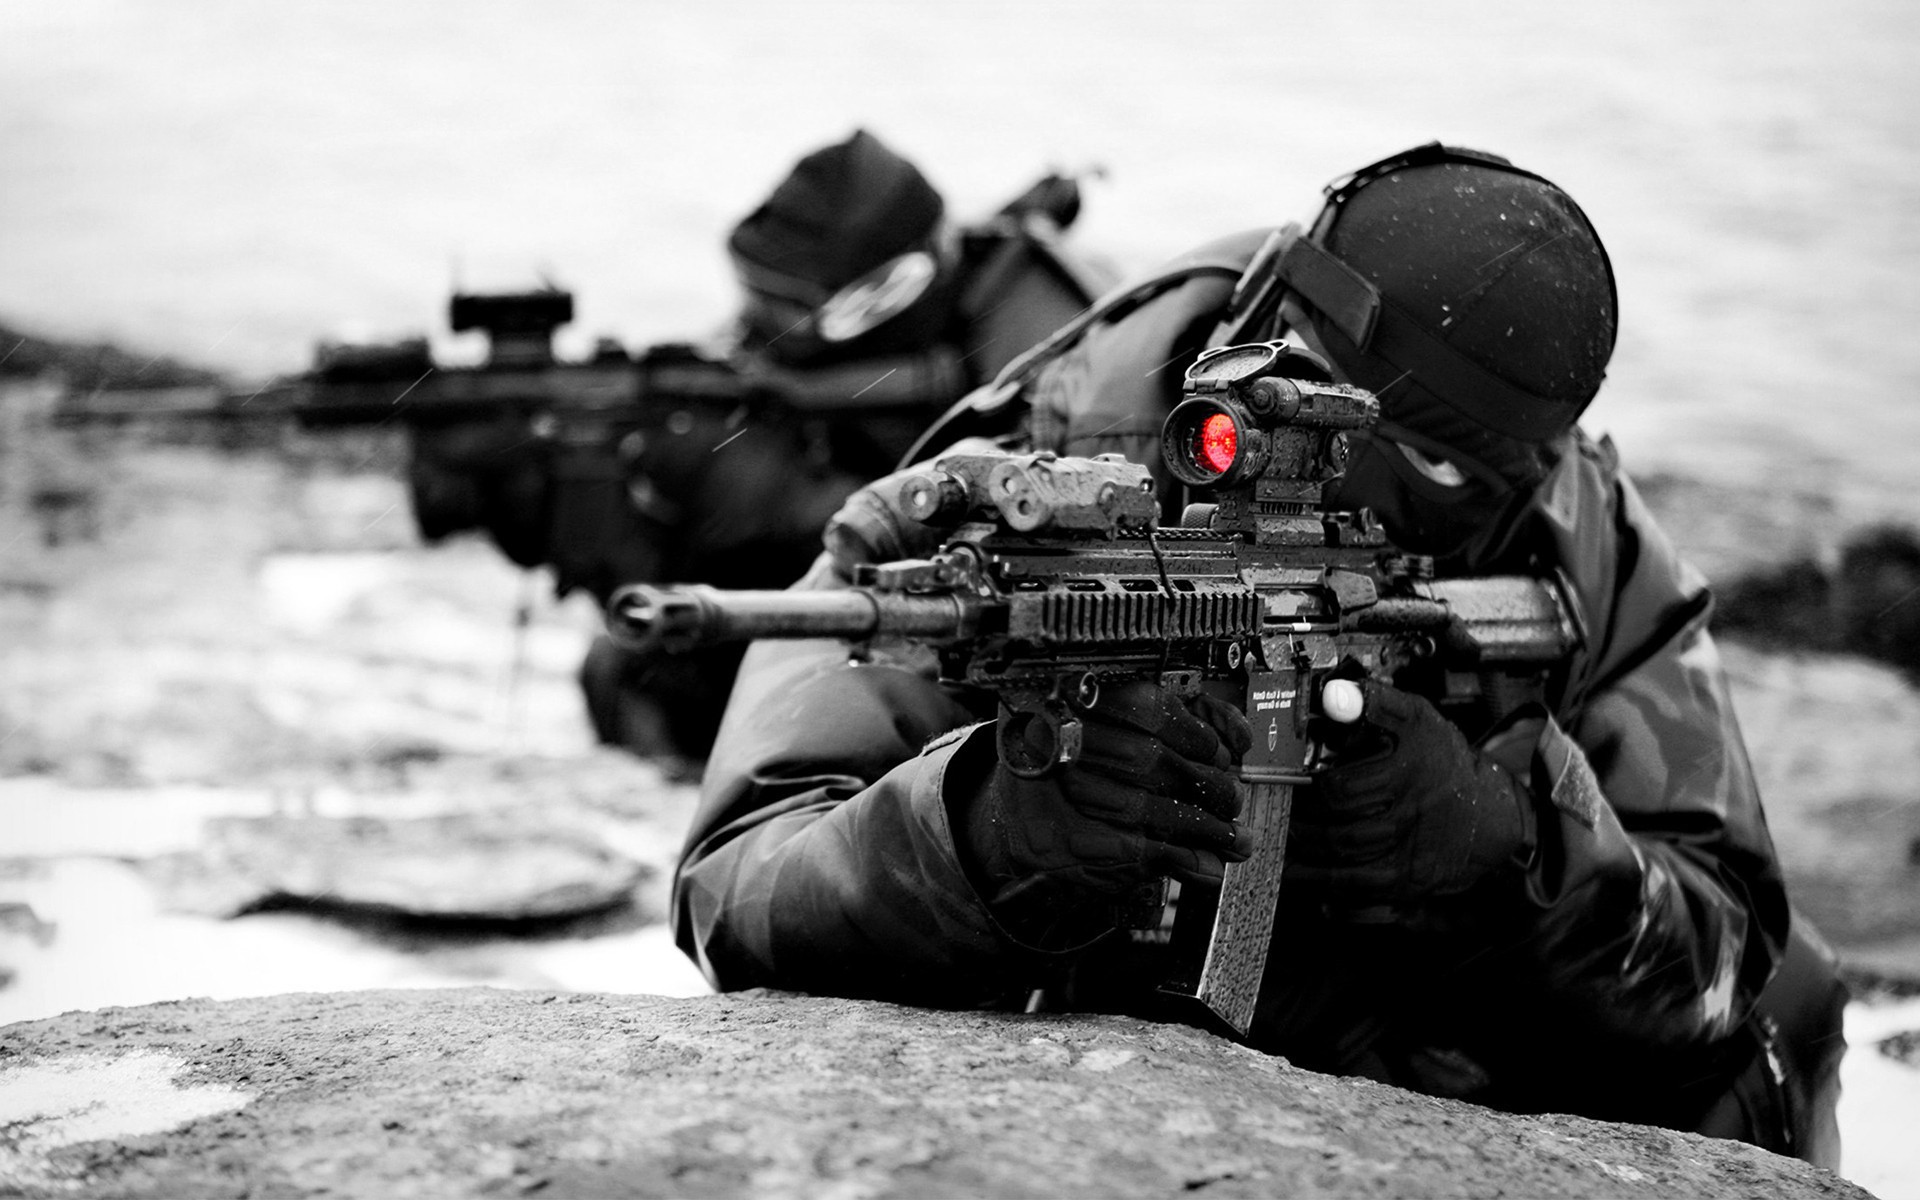  Sniper 889181 Sniper 889148 Sniper 889129 Sniper Wallpaper 889307 1920x1200